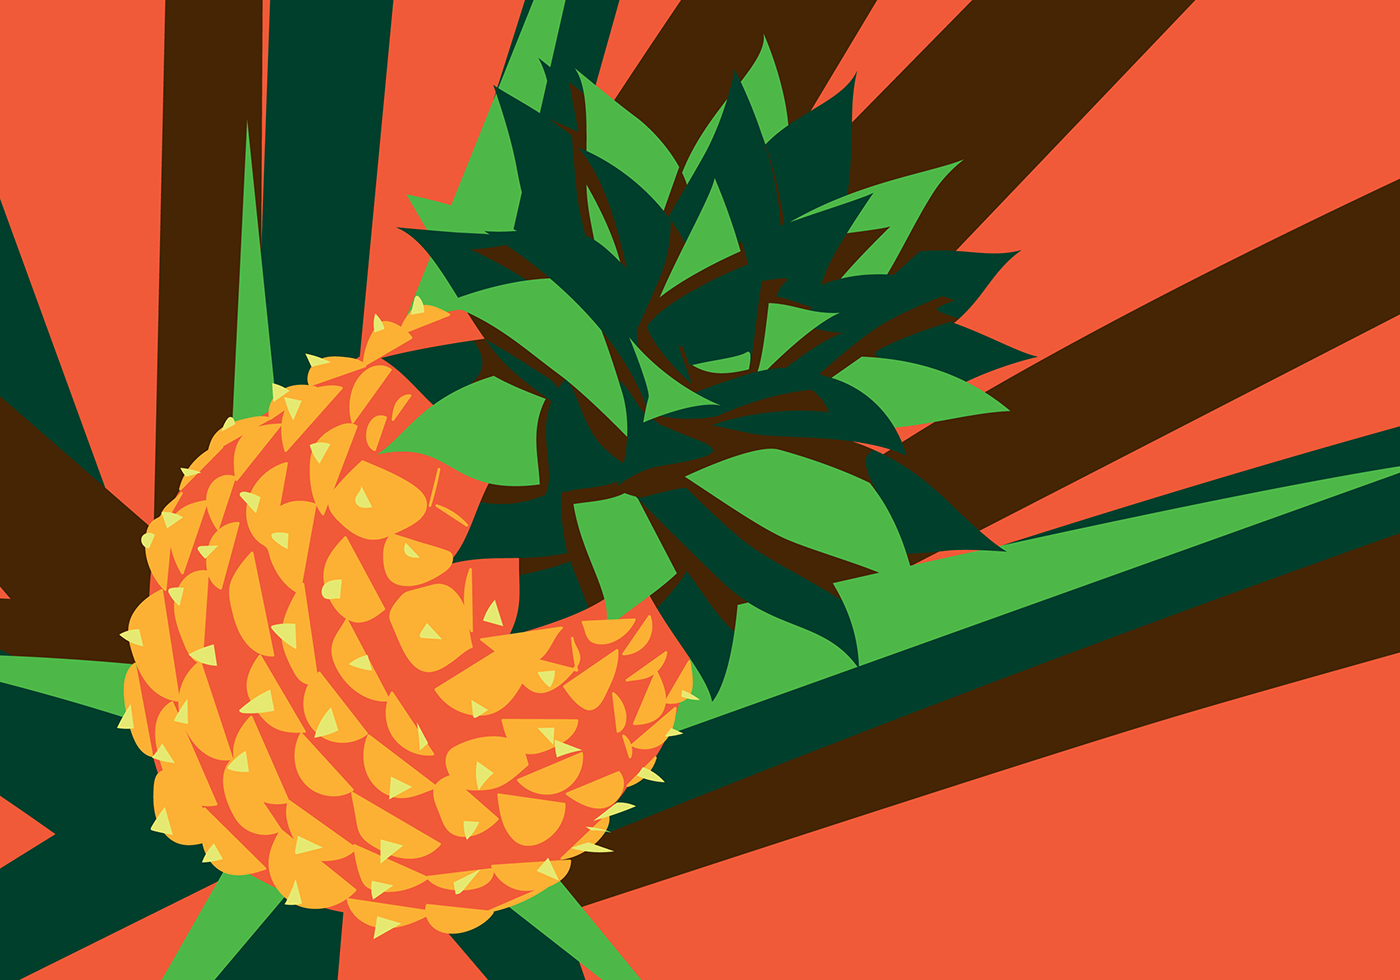 Rebrand ilustration Fruit doce mel frutas design brandbook graphic design  Ilustração branding 